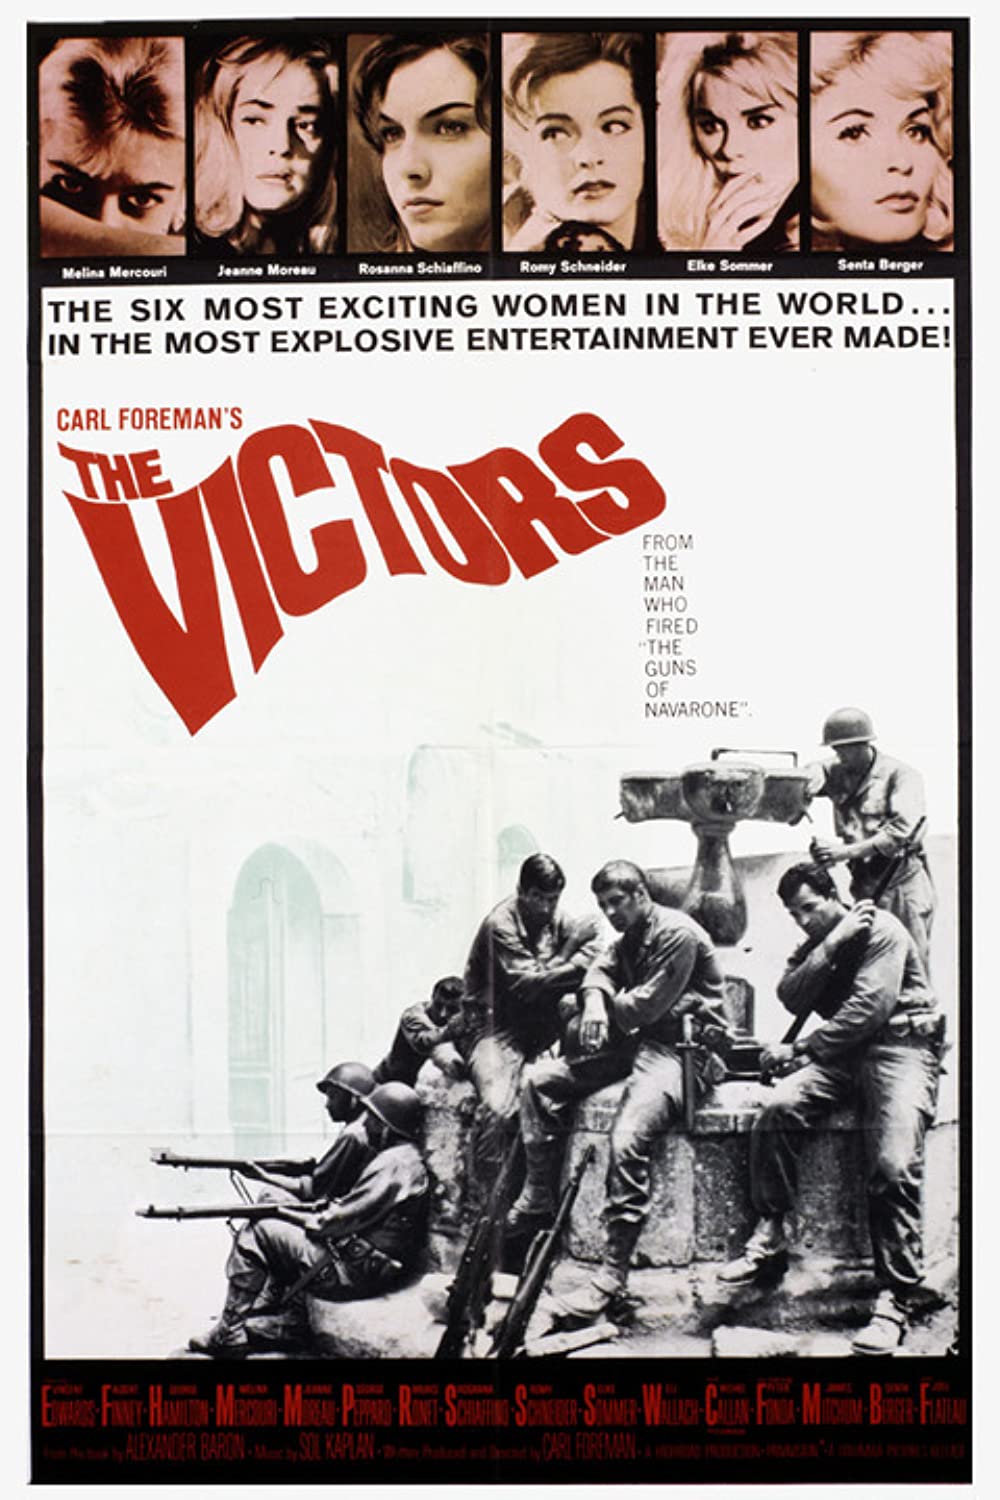 Filmbeschreibung zu The Victors